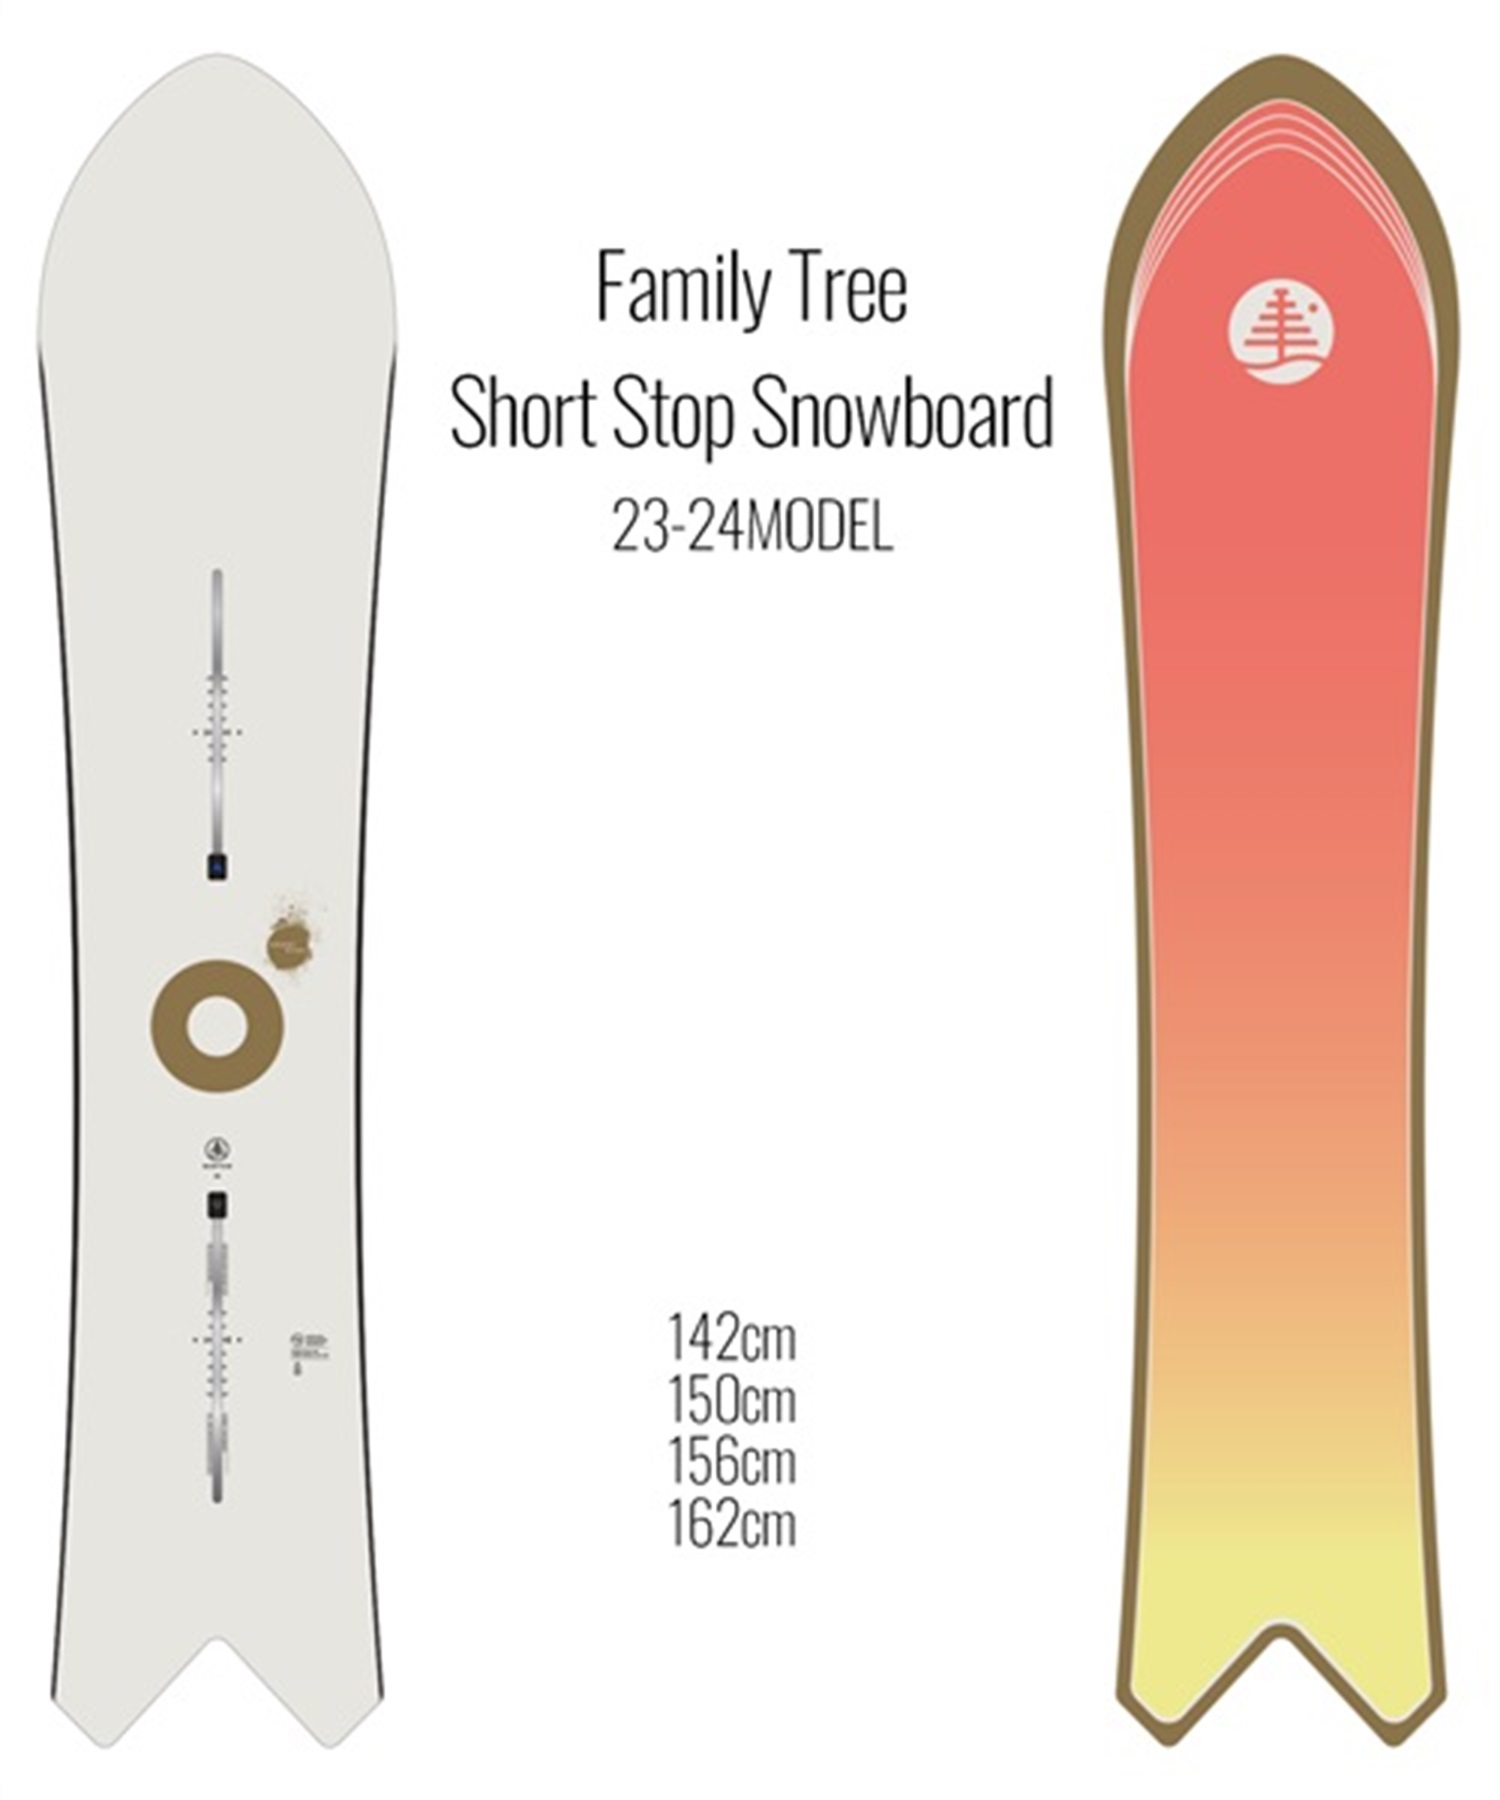 スノーボード 板 メンズ BURTON 23912100000 Family Tree Short Stop Snowboard 23-24モデル KK A26(ONECOLOR-142cm)